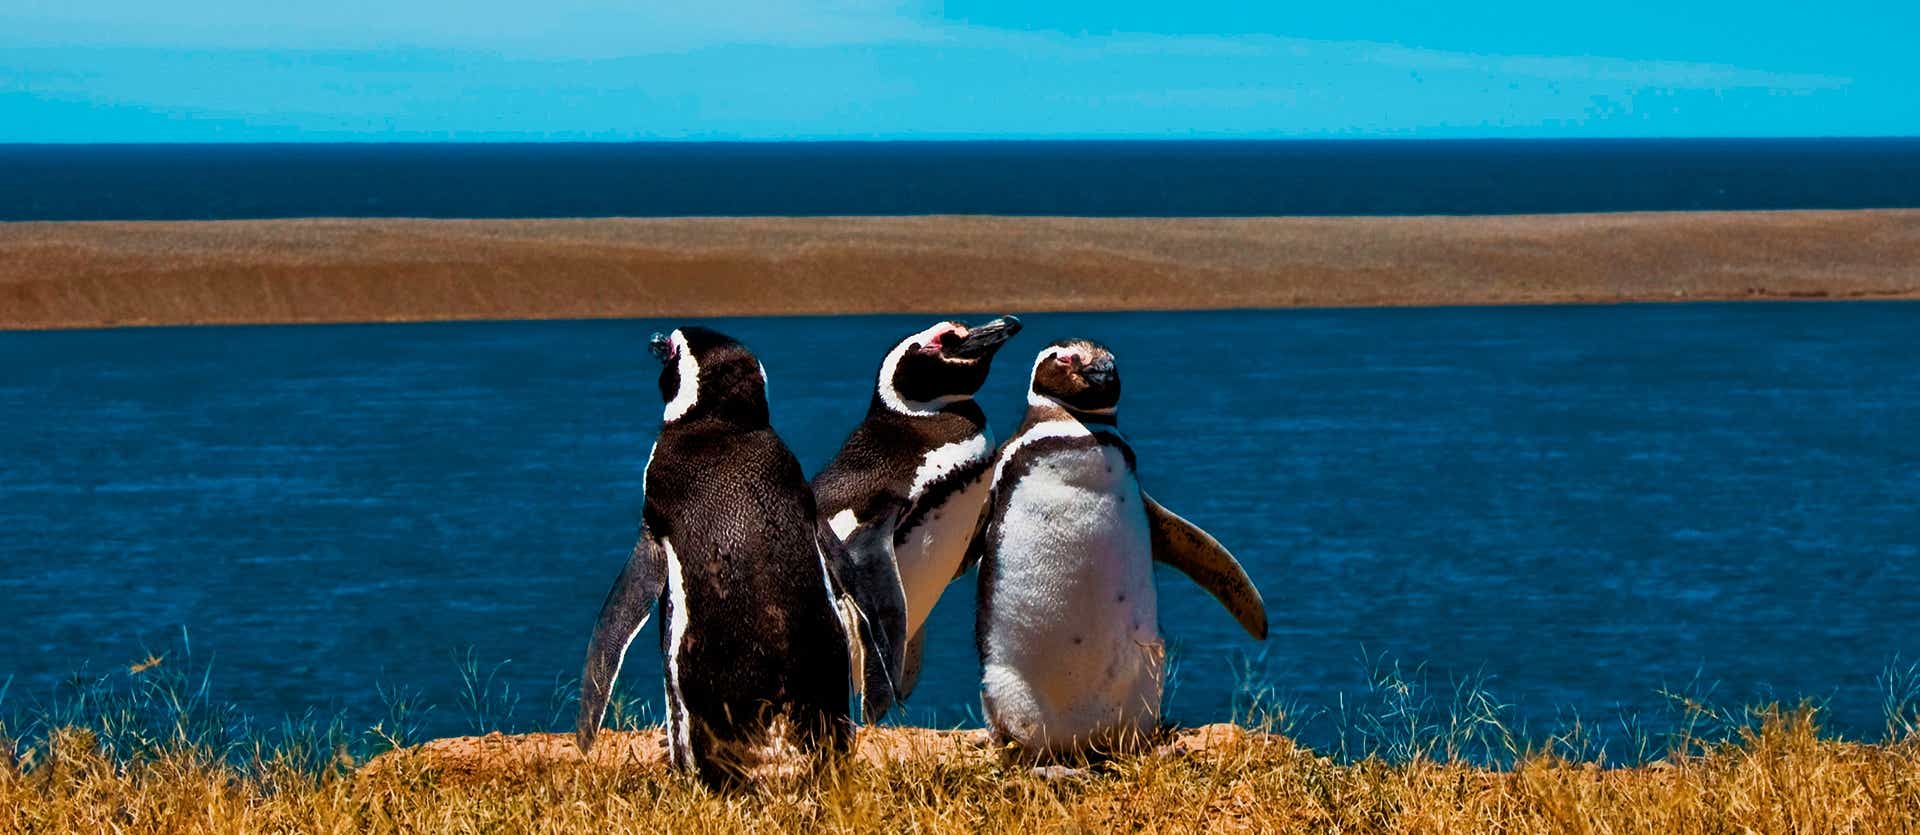 Penguins <span class="iconos separador"></span> Valdes Peninsula